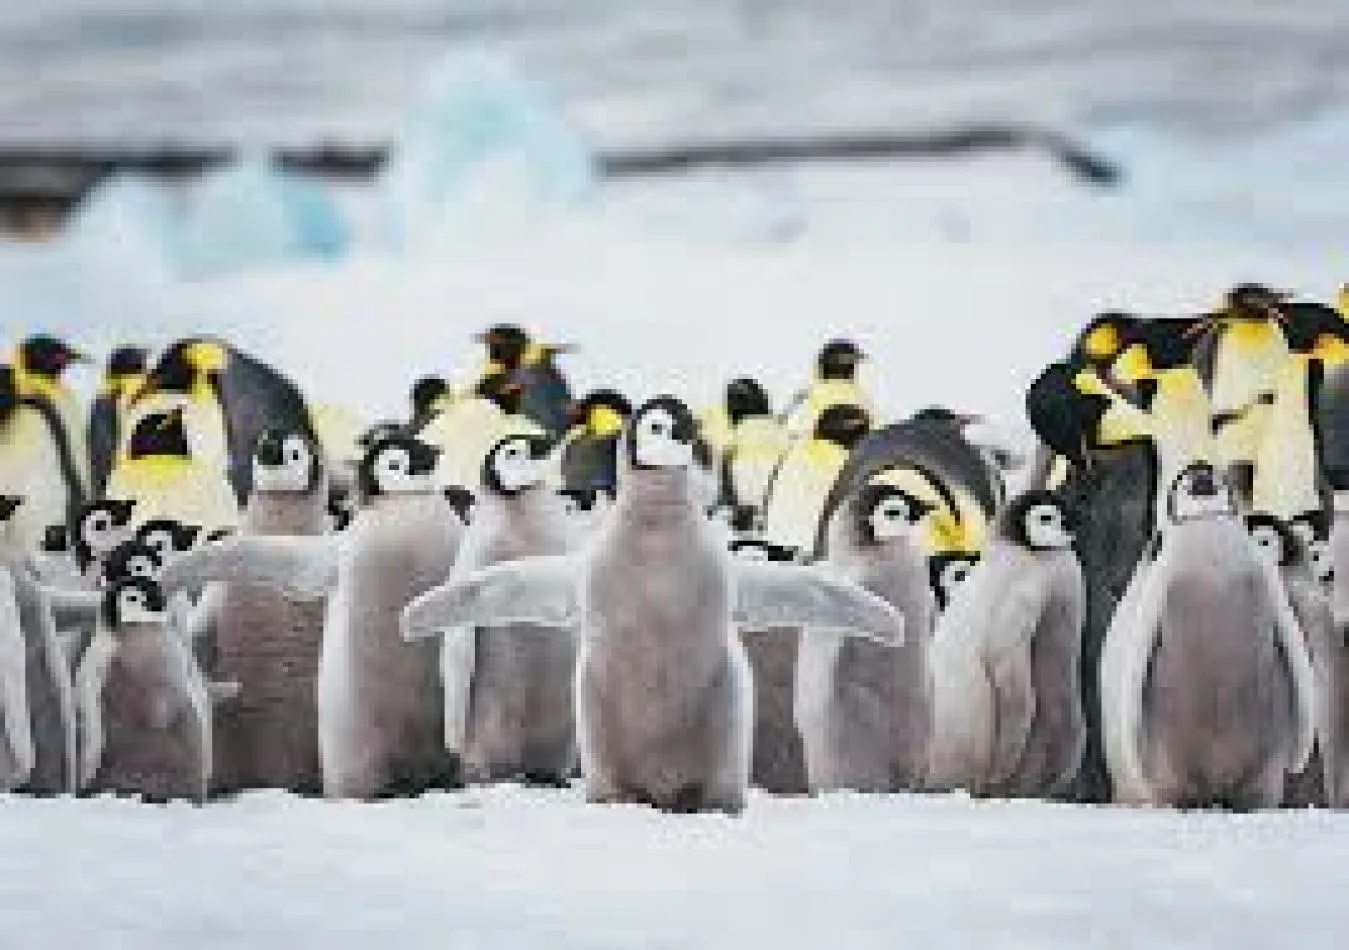 La cifra de pingüinos barbijo cae hasta un 77% en la Antártida en 50 años